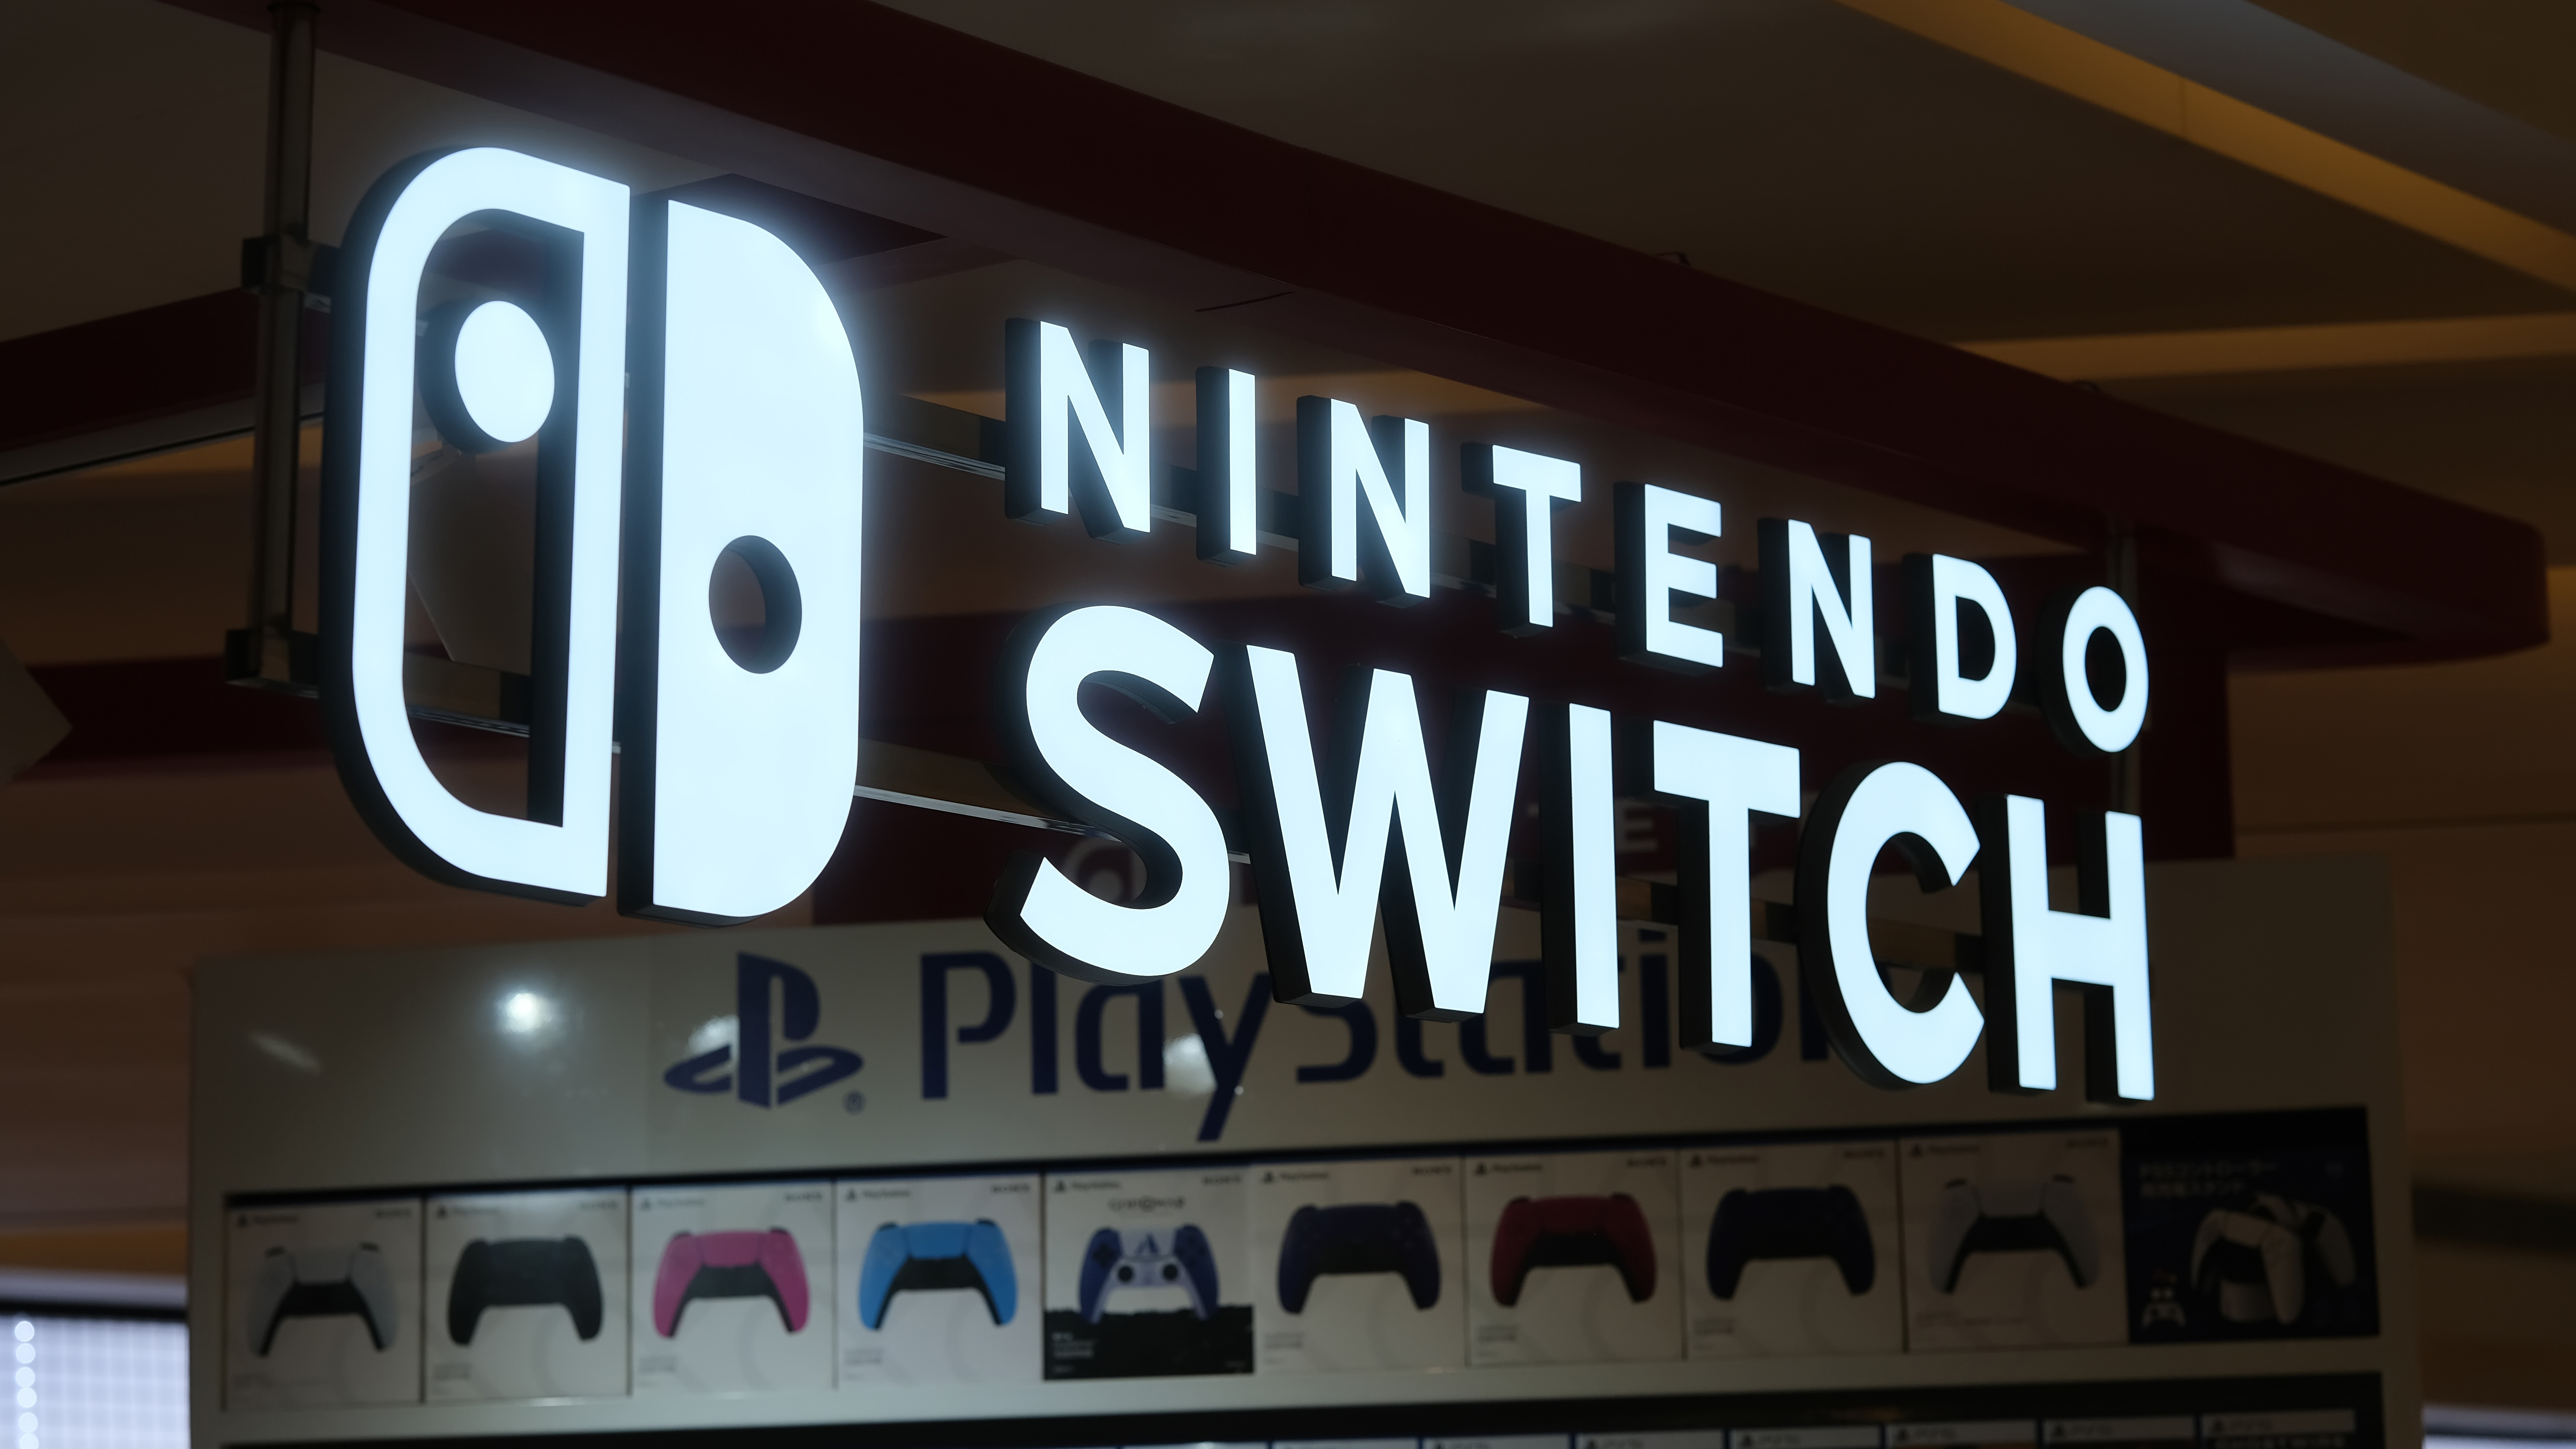 Nintendo Switch ストアの看板。 任天堂が開発したビデオゲーム機